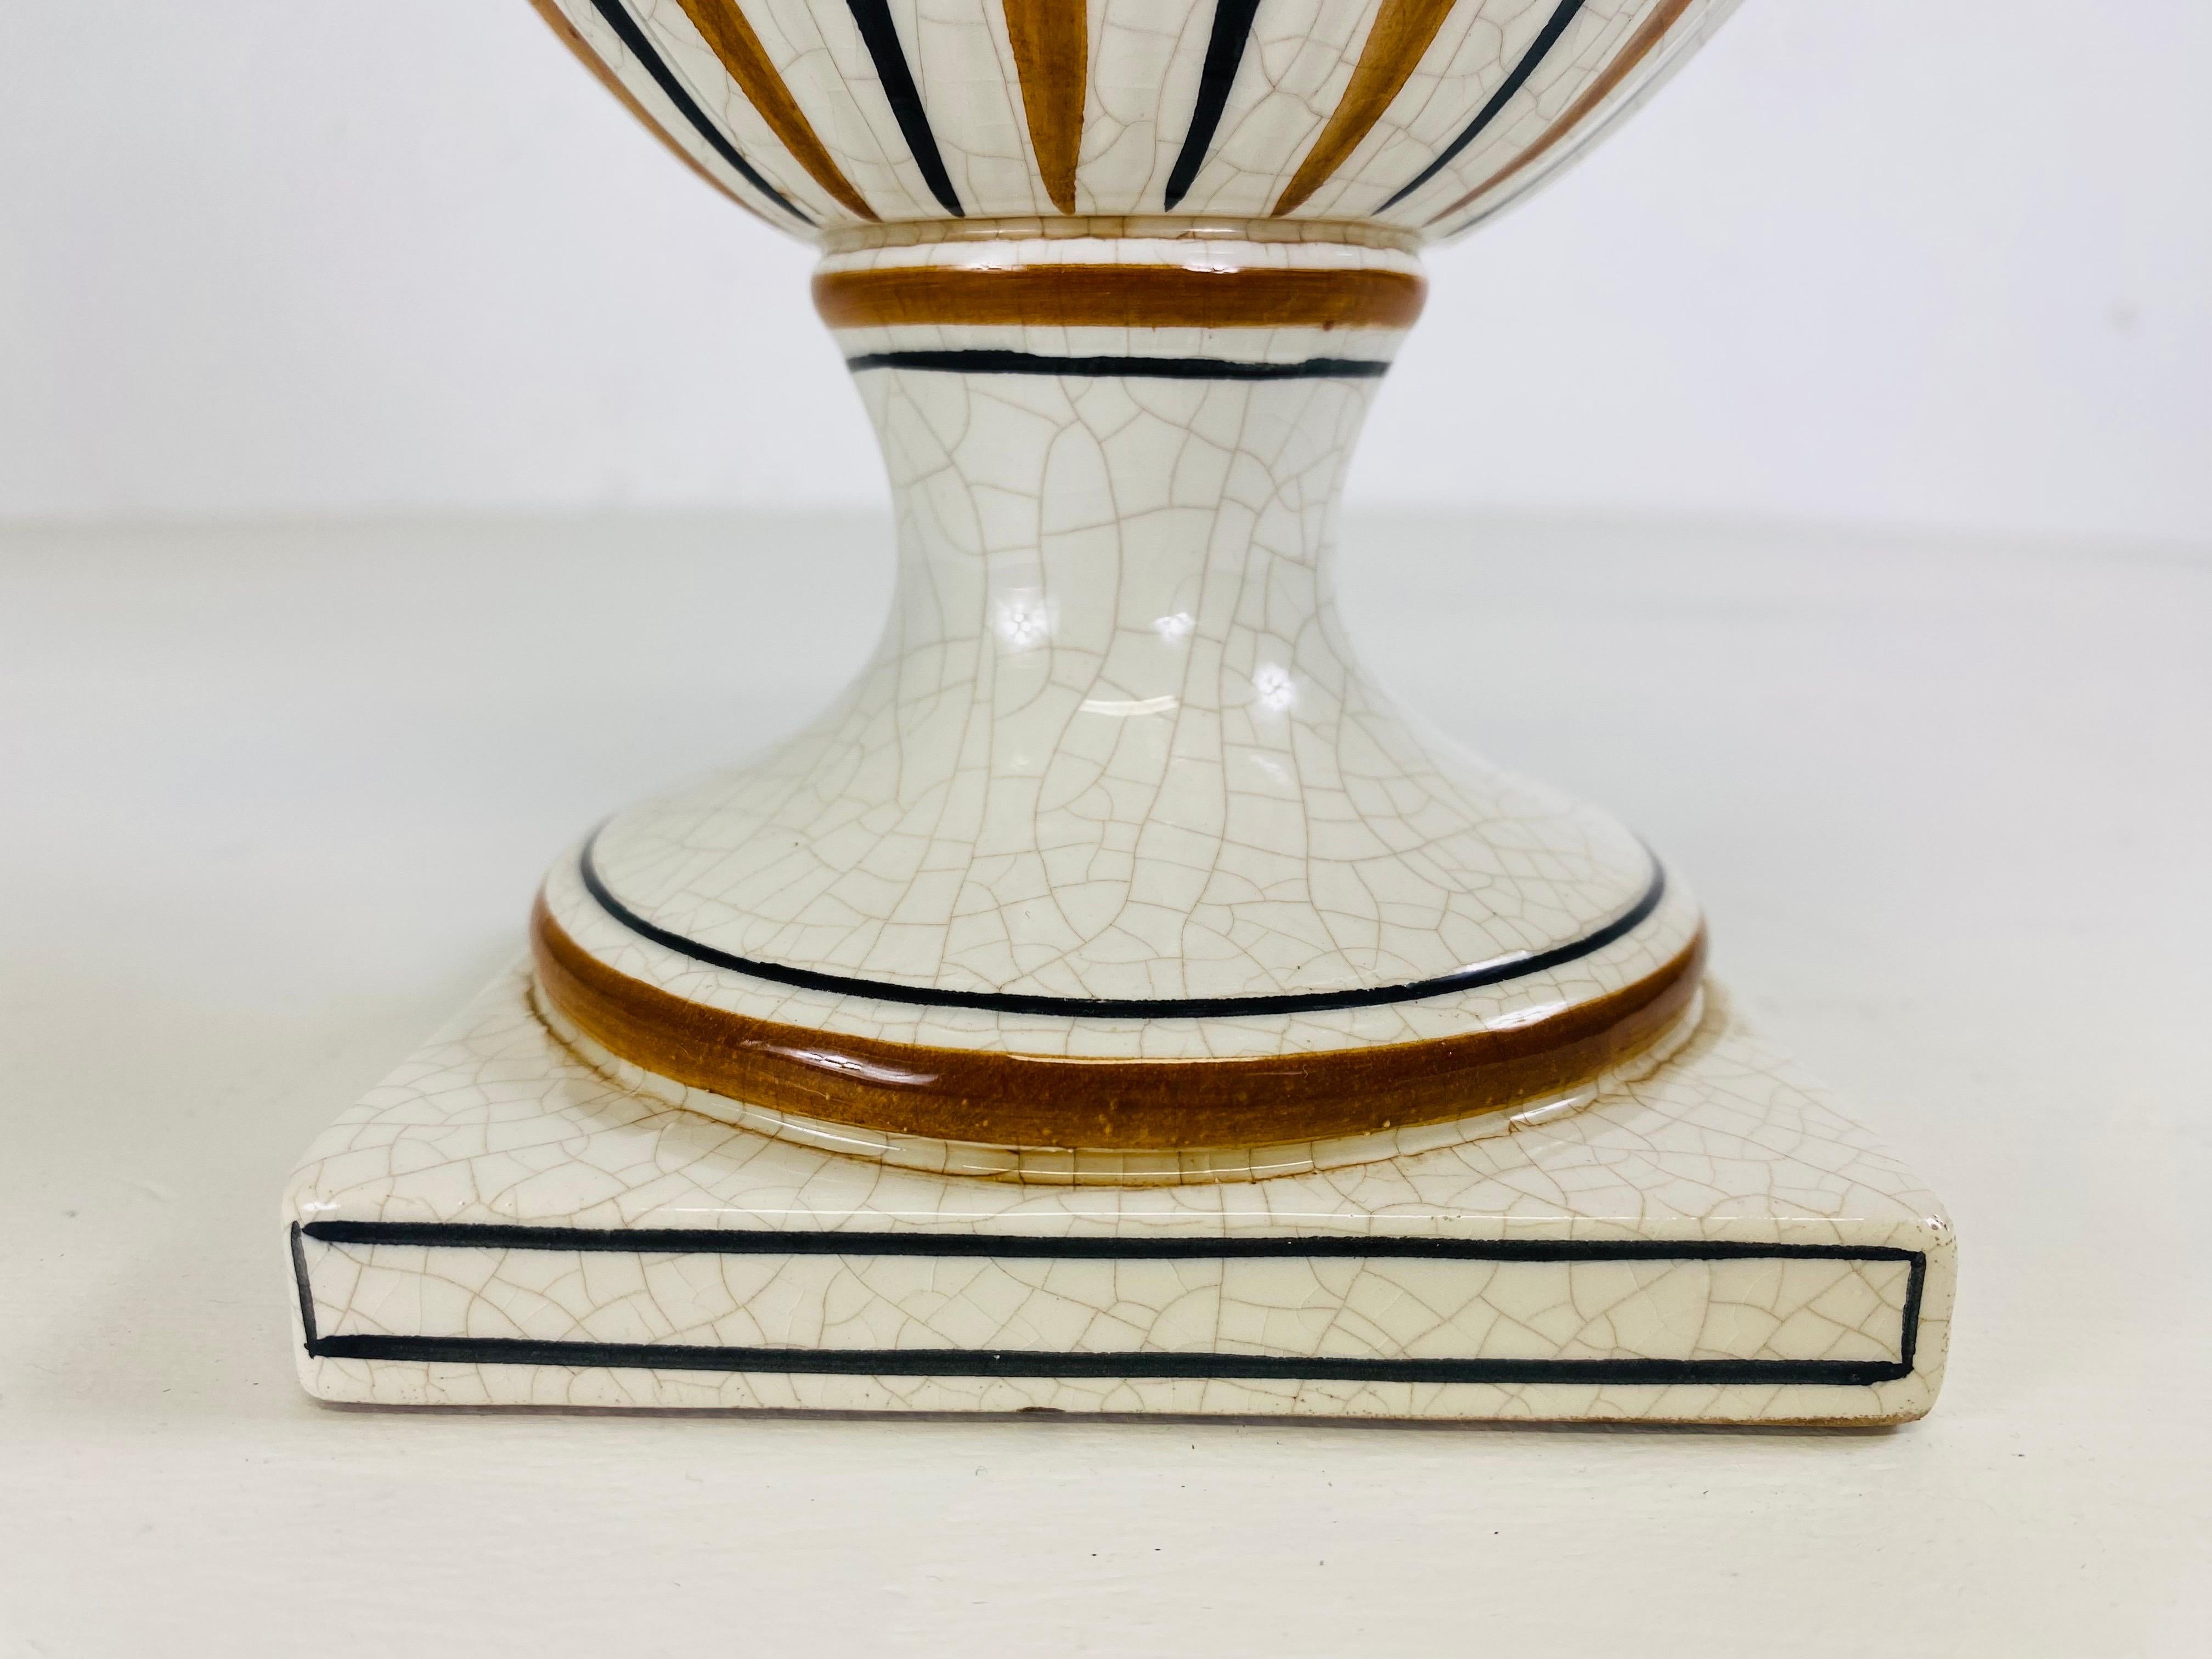 Dies ist eine Mitte des Jahrhunderts handbemalte Keramik Urne mit Deckel. Diese handbemalte klassische italienische Urne hat schöne Farbtöne von Schokoladenbraun, Bernstein und Creme. Diese Urne mit Deckel wurde in Italien oder 1950 hergestellt.